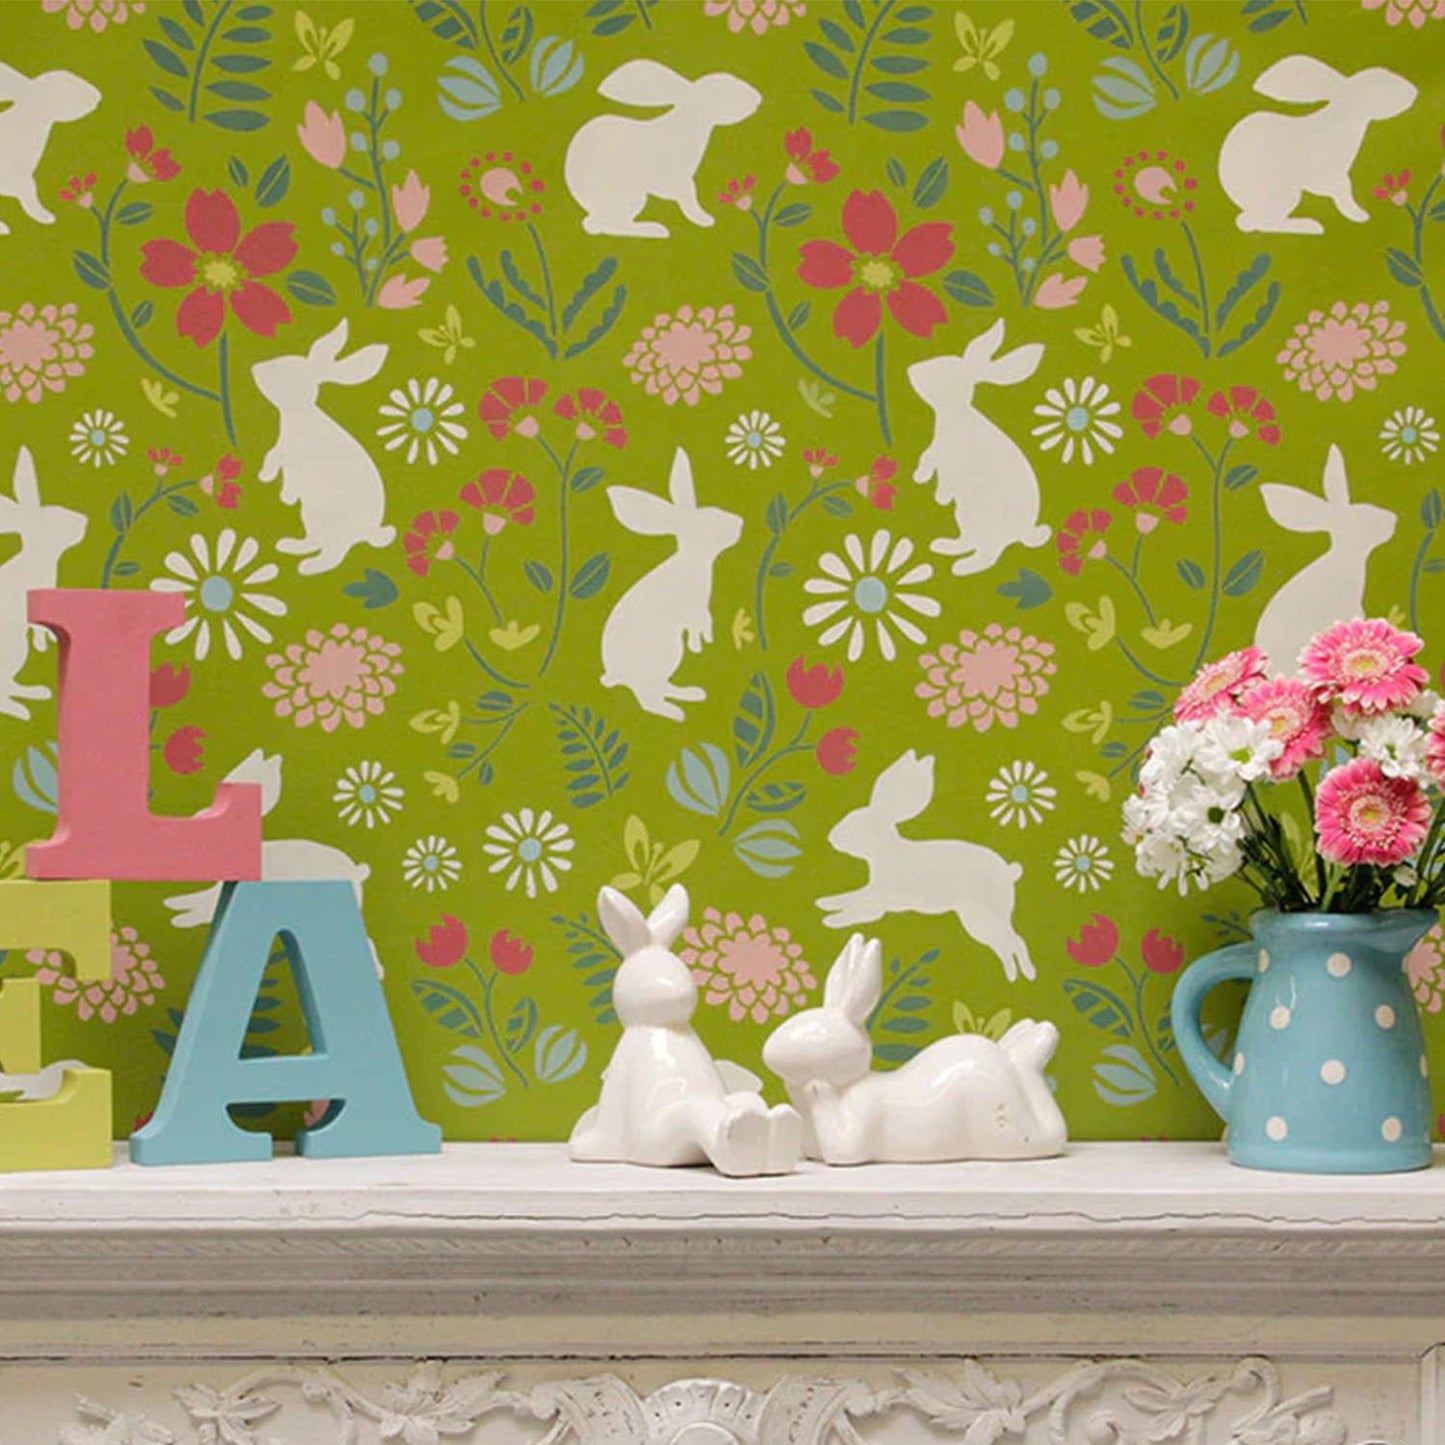 Latest Bunny Hop Kids Room Wall Stencil (KDRDSS1250-2436)